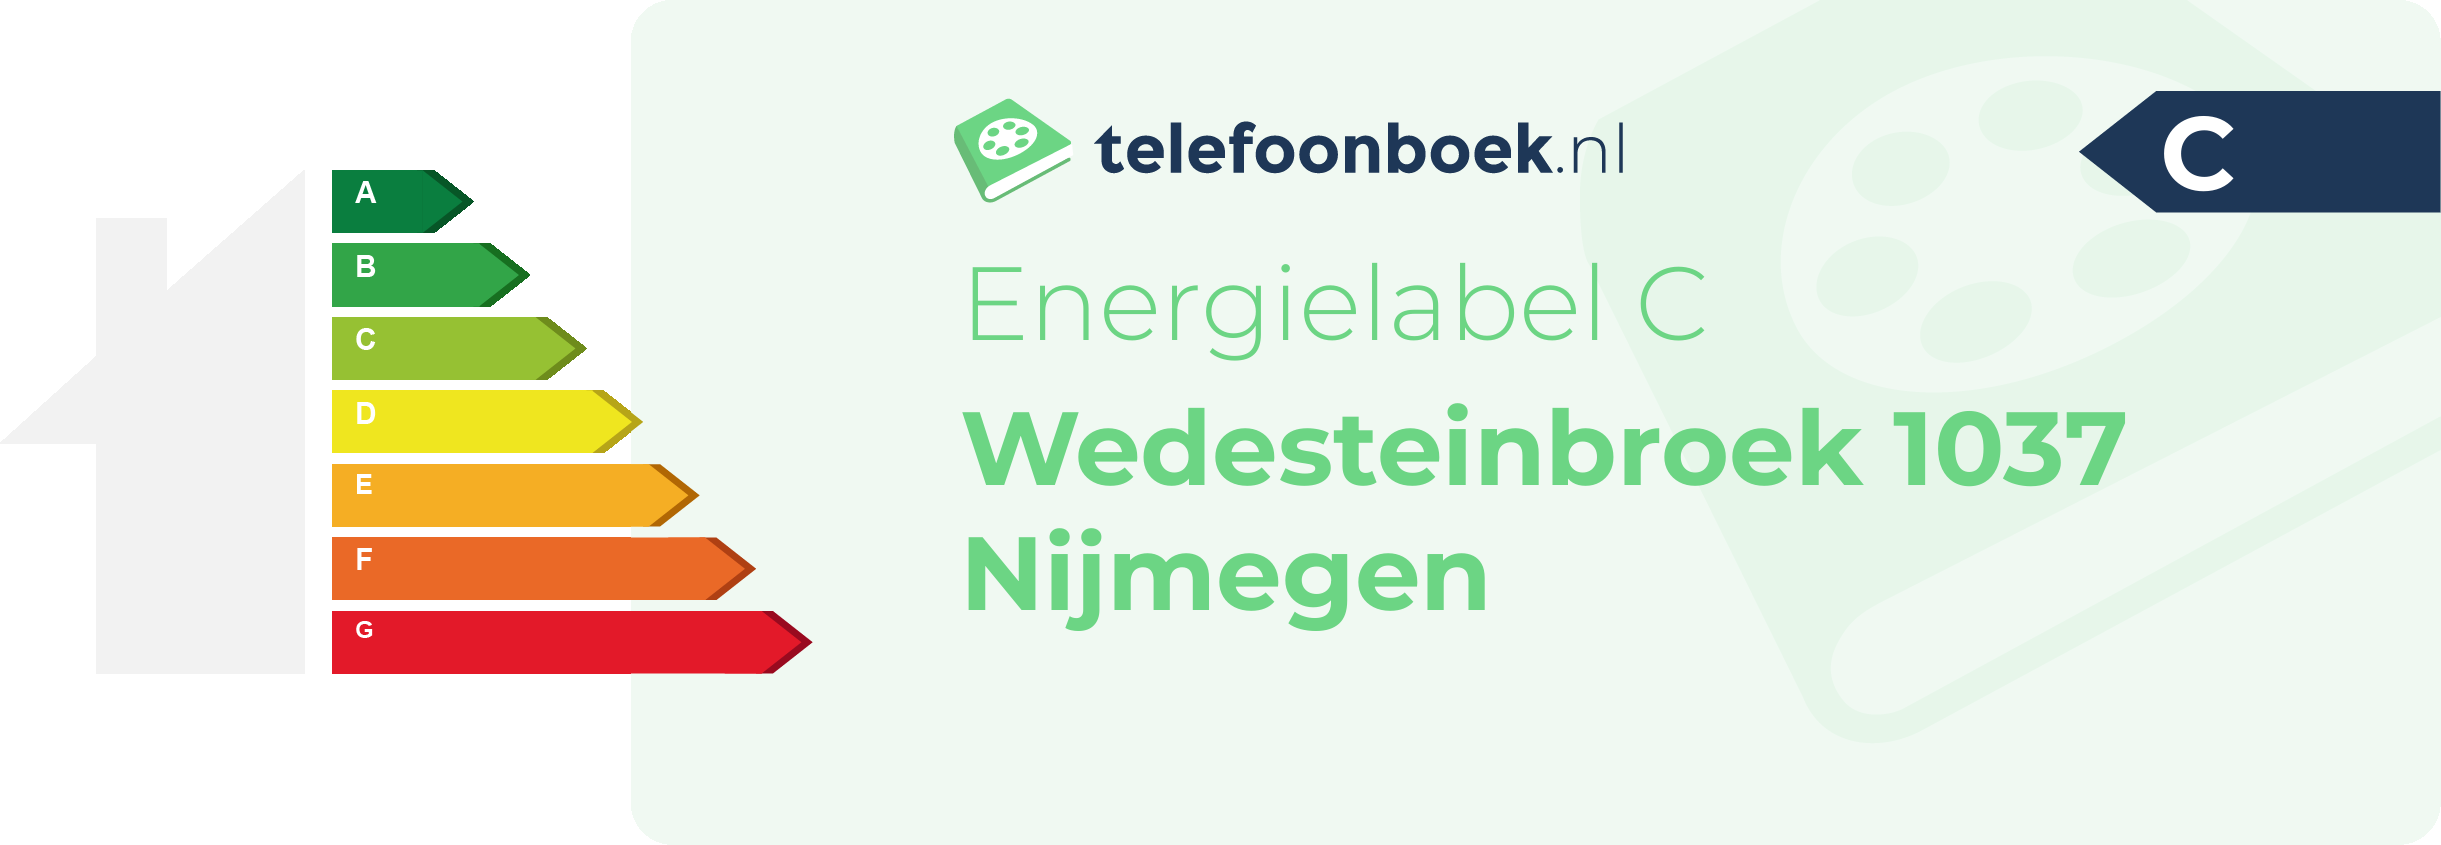 Energielabel Wedesteinbroek 1037 Nijmegen